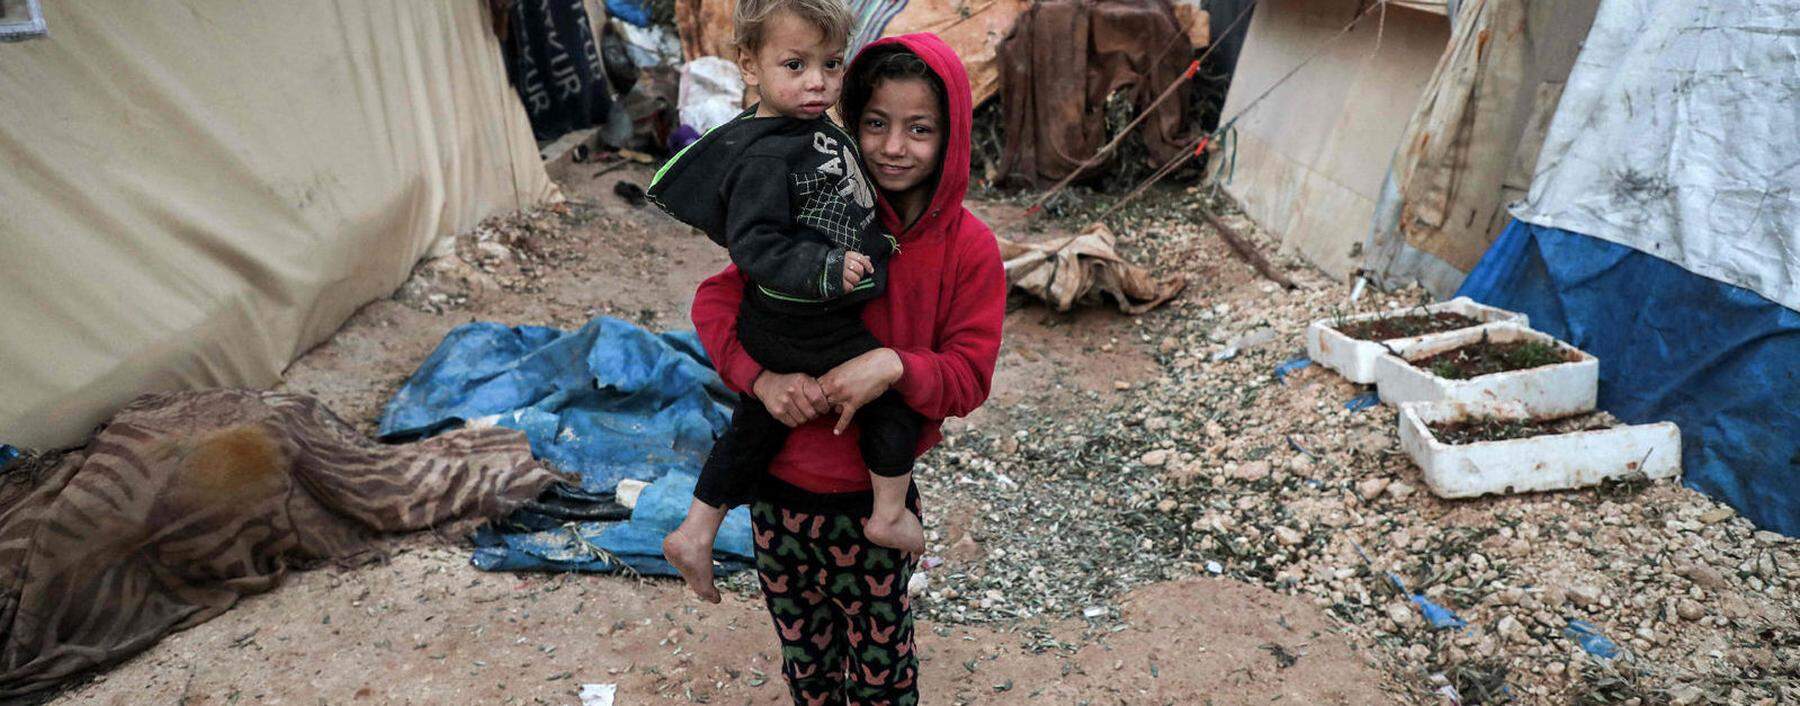 Kinder in einem Flüchtlingslager in Kafr Uruq im Nordwesten Syriens, Region Idlib.  